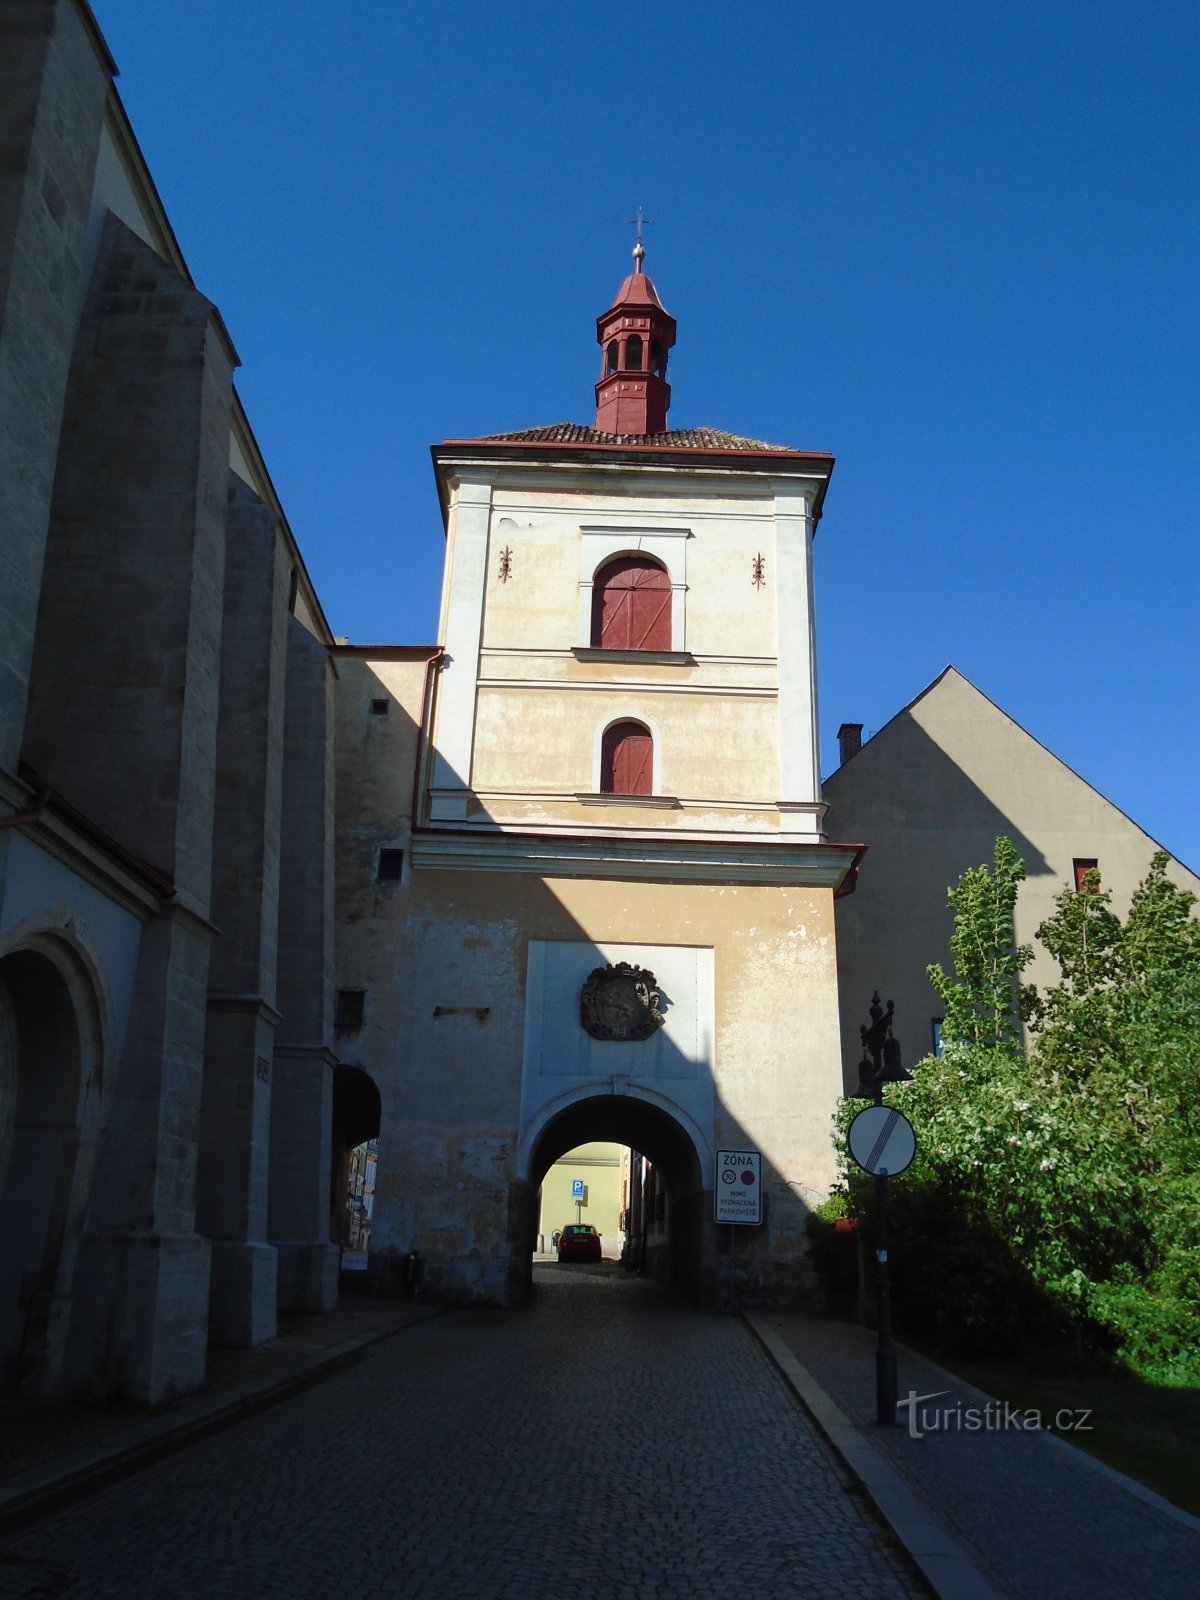 Πύλη της πόλης με το καμπαναριό (Jaroměř)